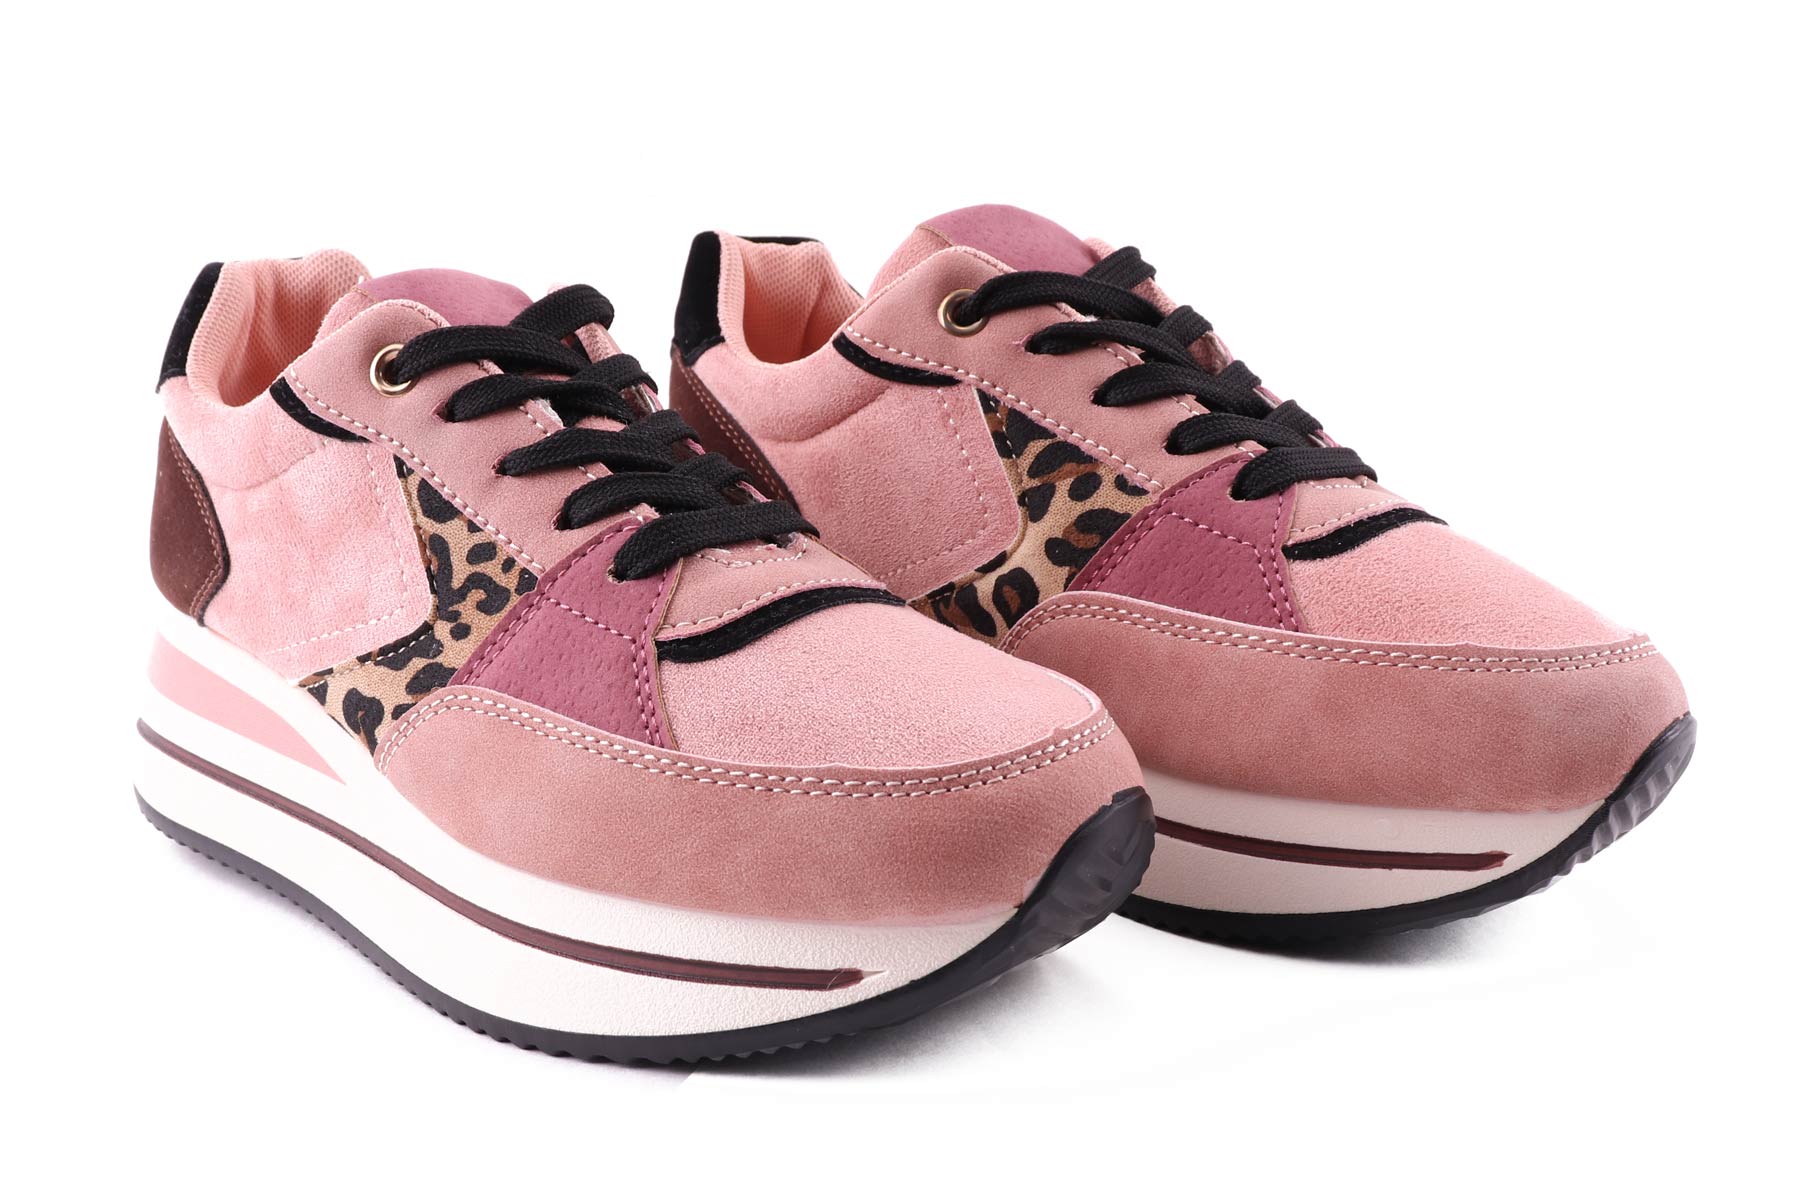 Buty sneakersy na podwyższonej podeszwie, panterka, różowe